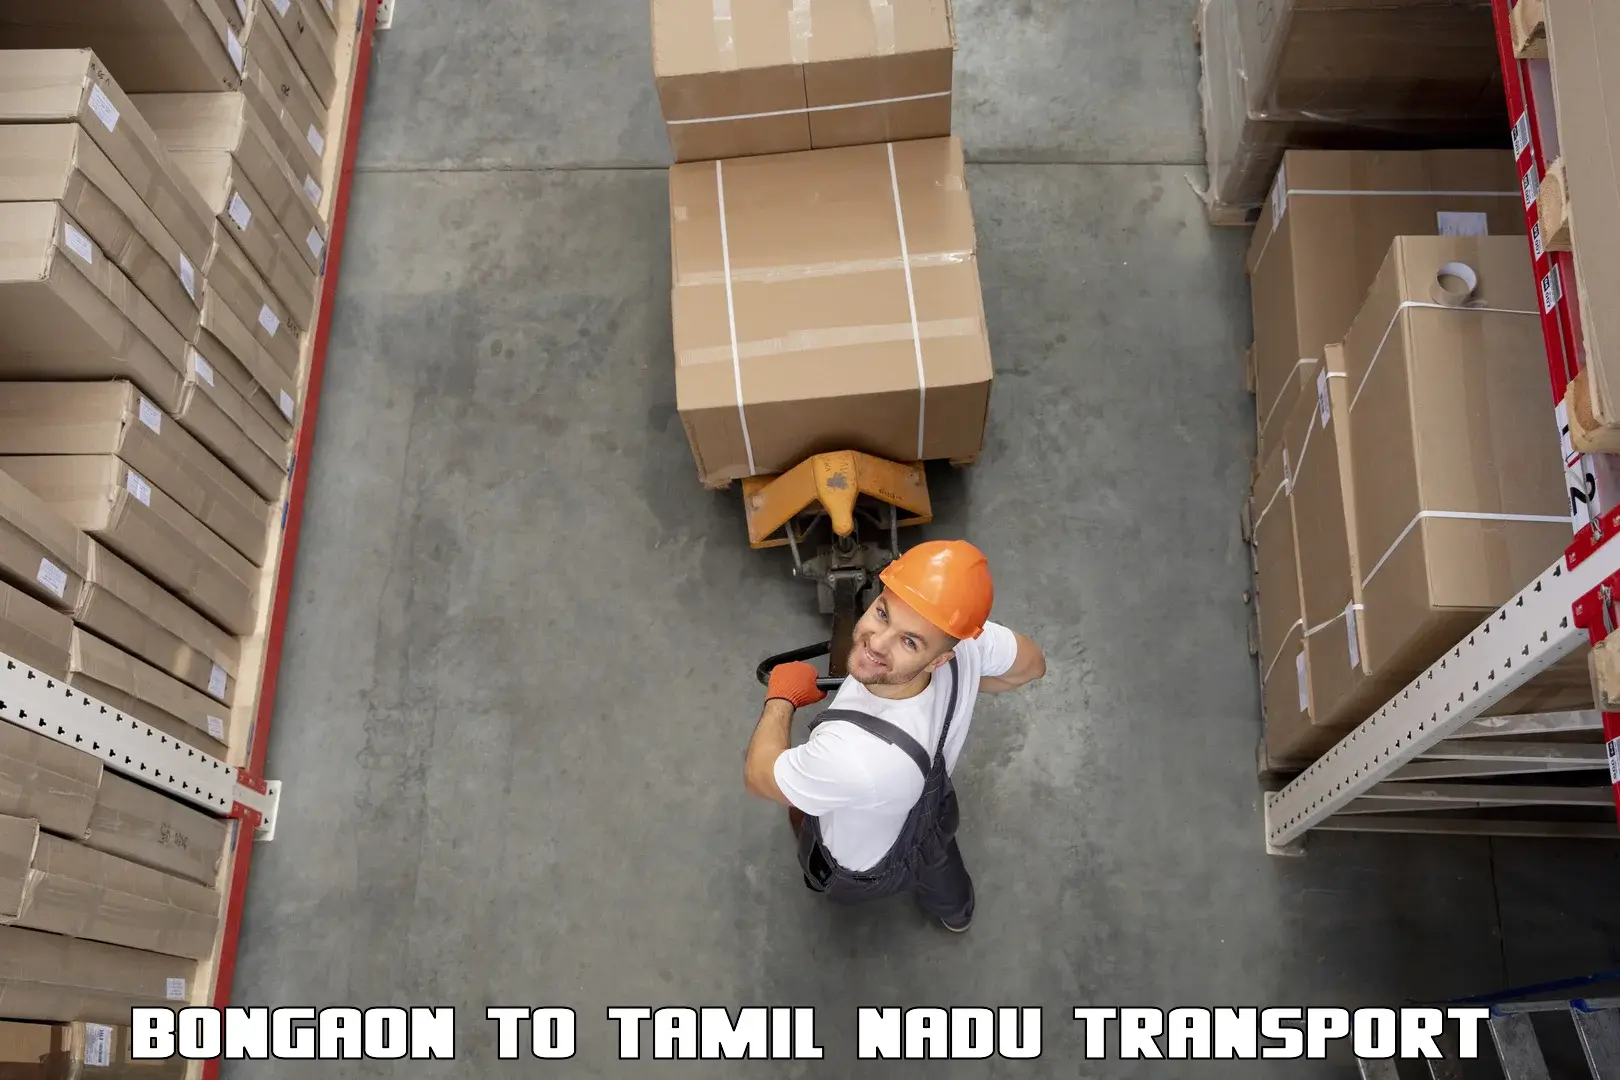 Transport shared services Bongaon to Kudankulam